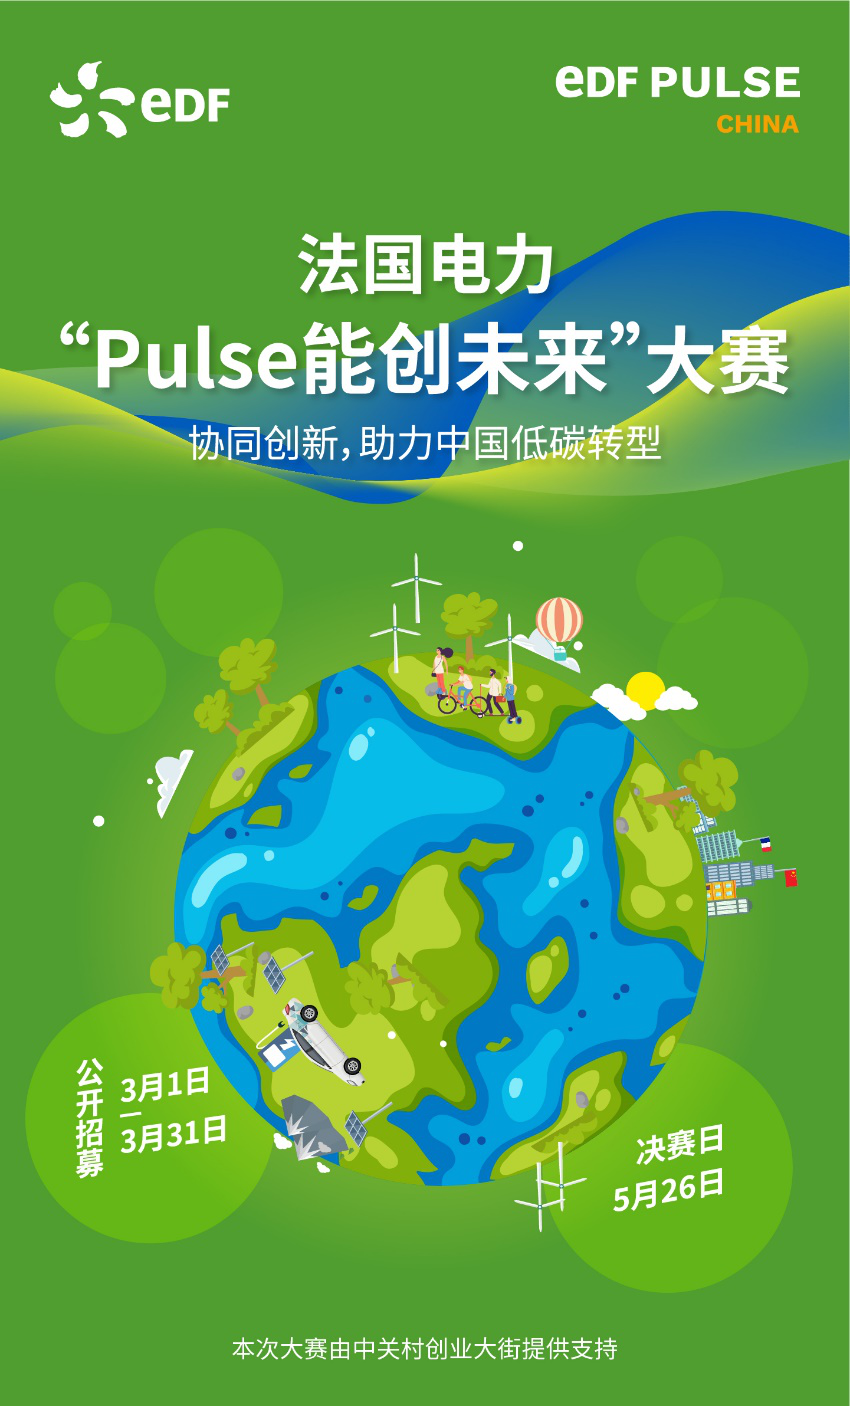 法国电力集团“Pulse能创未来”大赛启动 携初创企业助力中国低碳转型